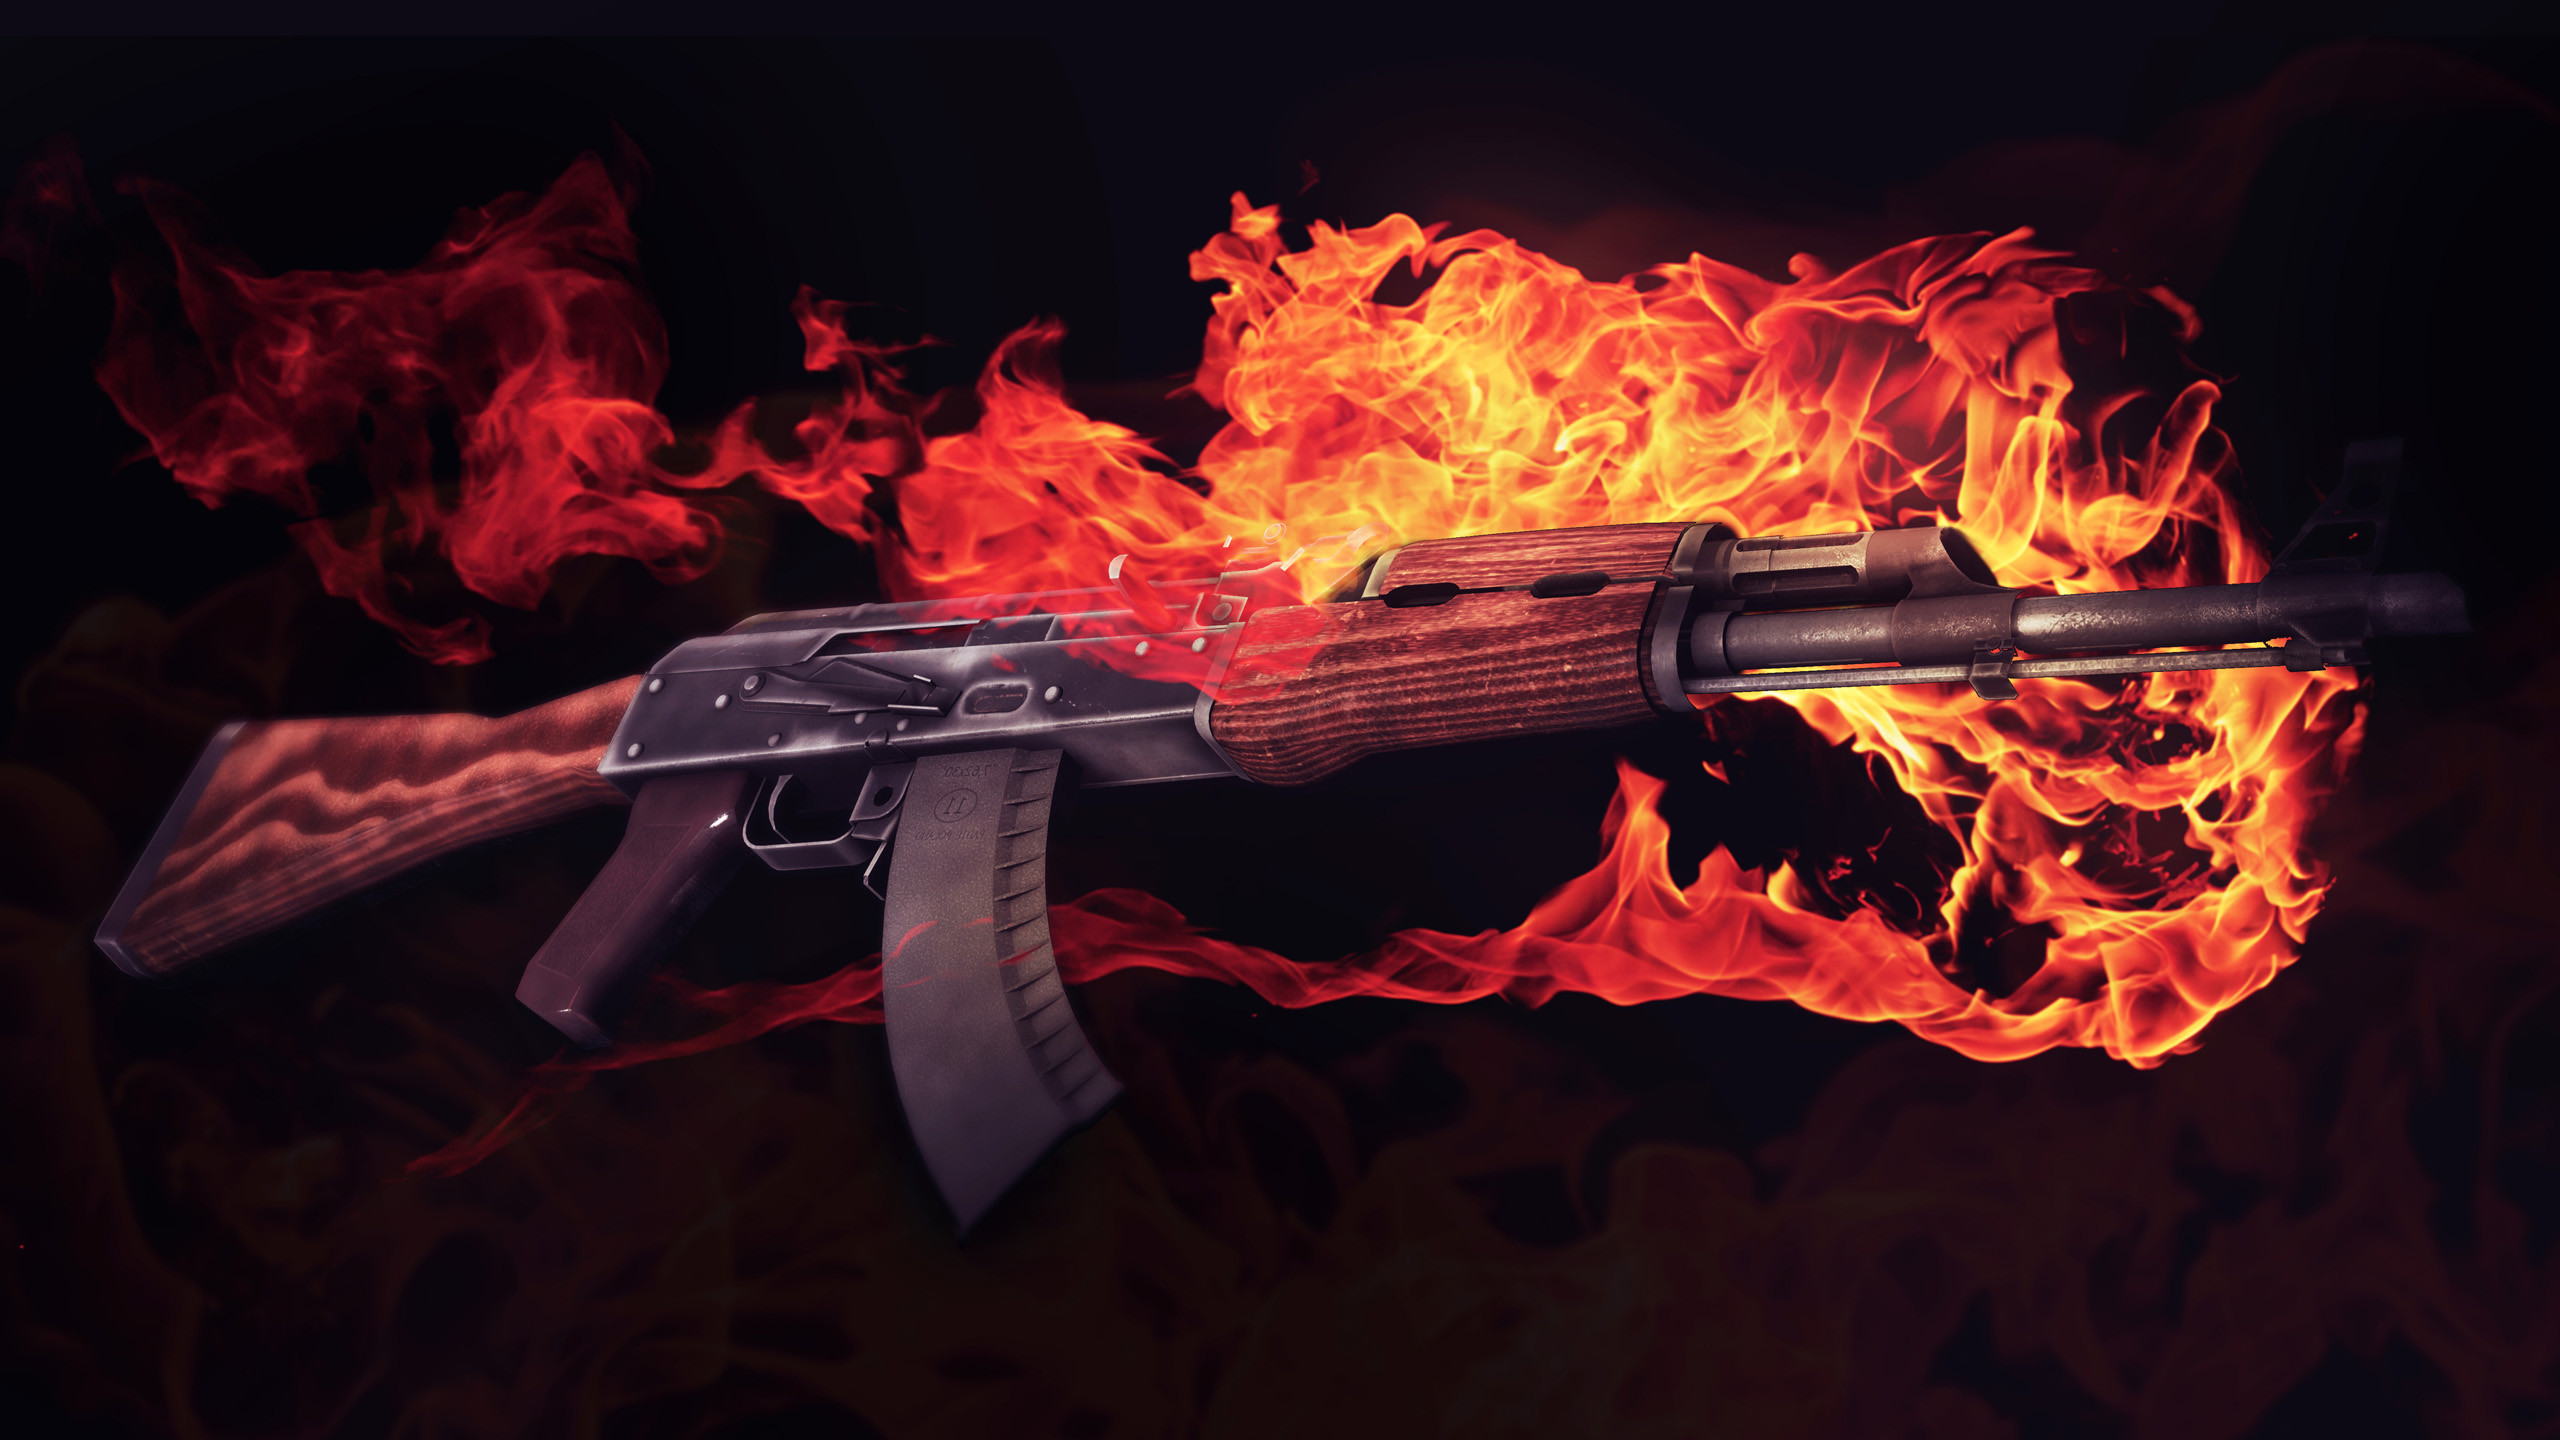 Download CS GO AK-47 In Red Horus Wallpaper